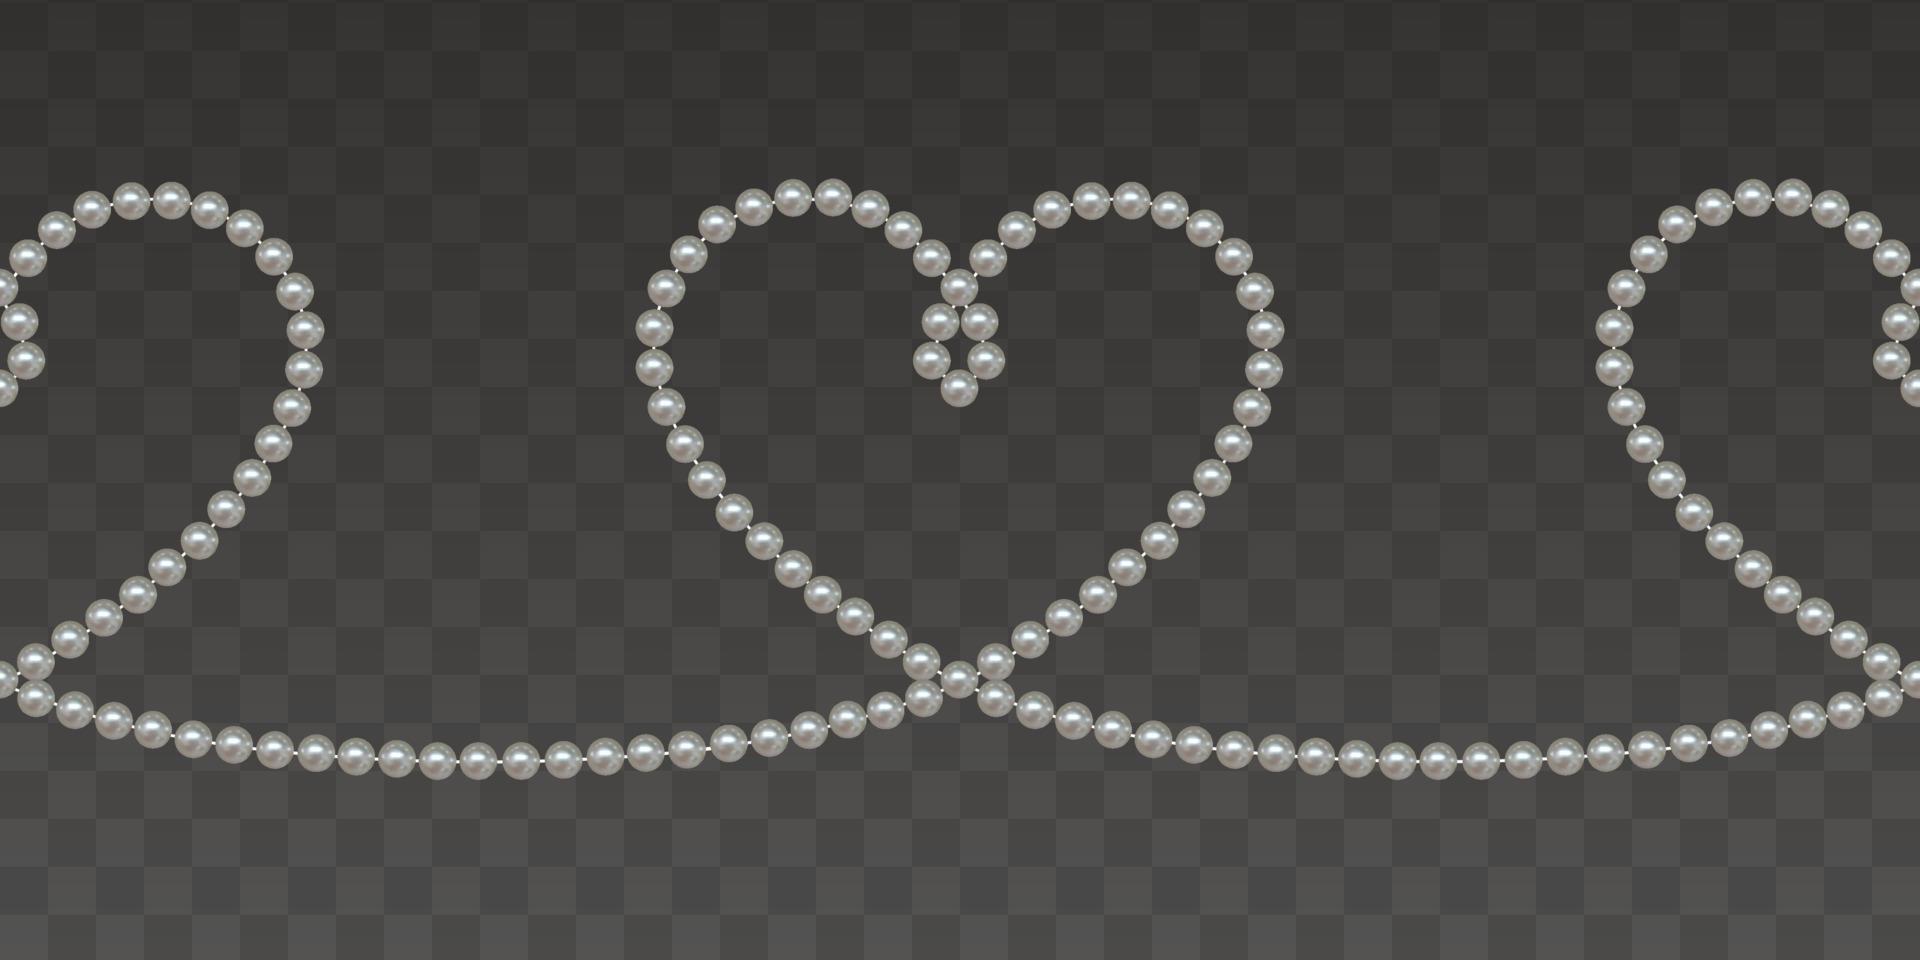 bordure transparente avec des perles. coeurs avec perles pour les décorations de mariage et de la Saint-Valentin vecteur